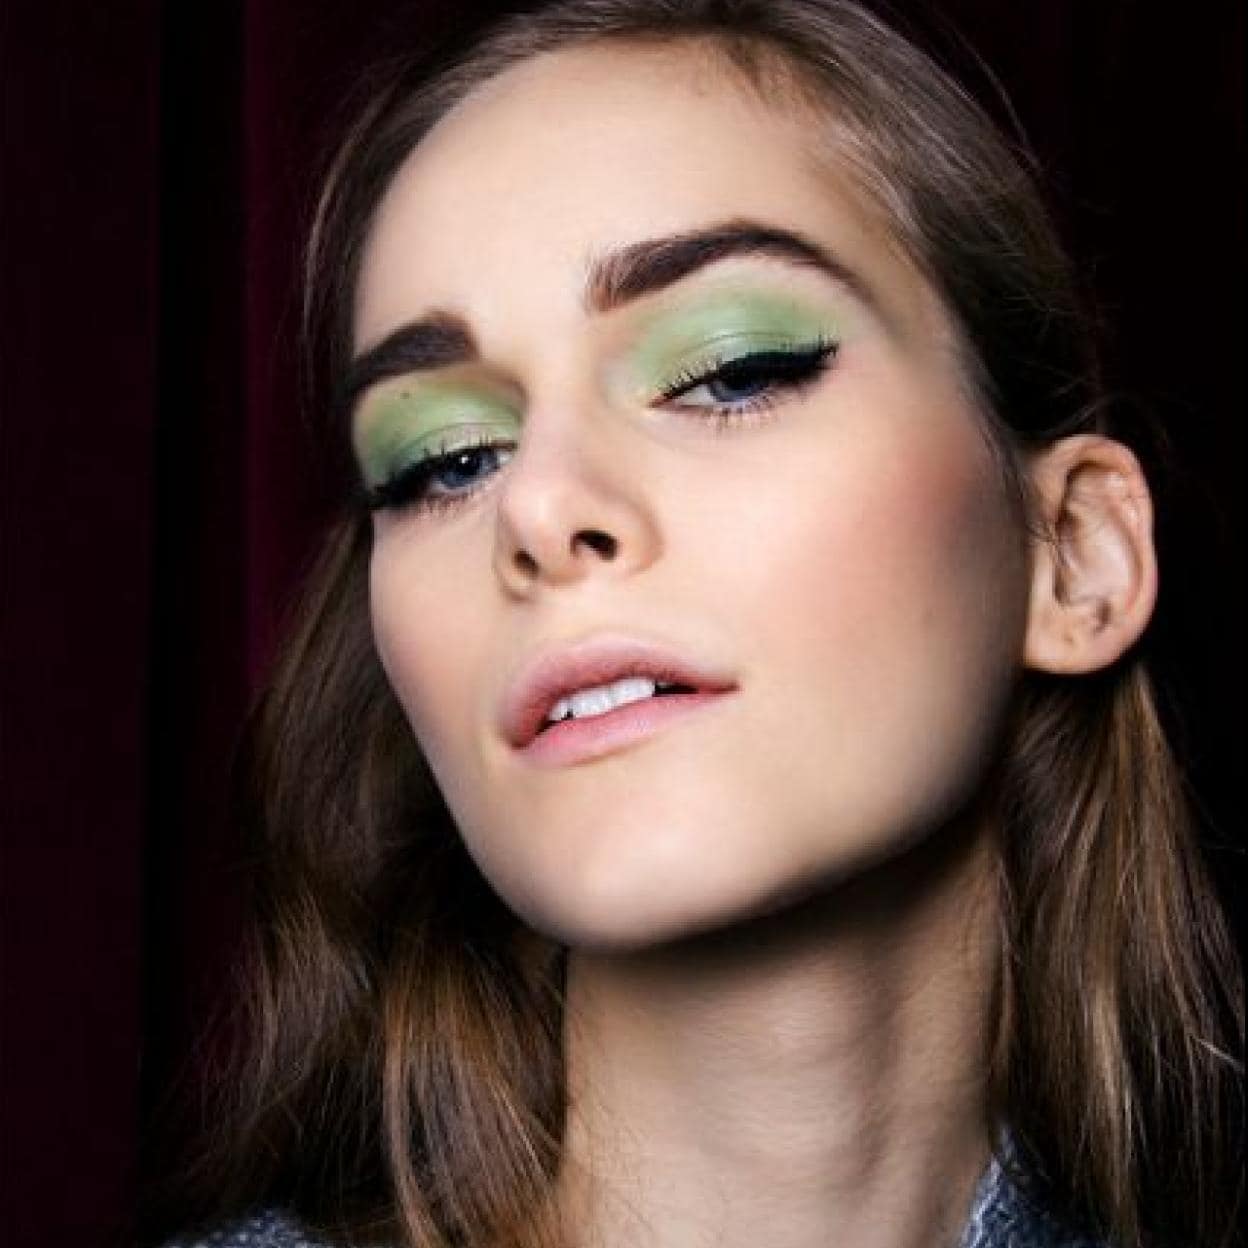 Prepara ojos para lucir maquillaje de moda con sombras verdes que triunfa en Pinterest | Mujer Hoy